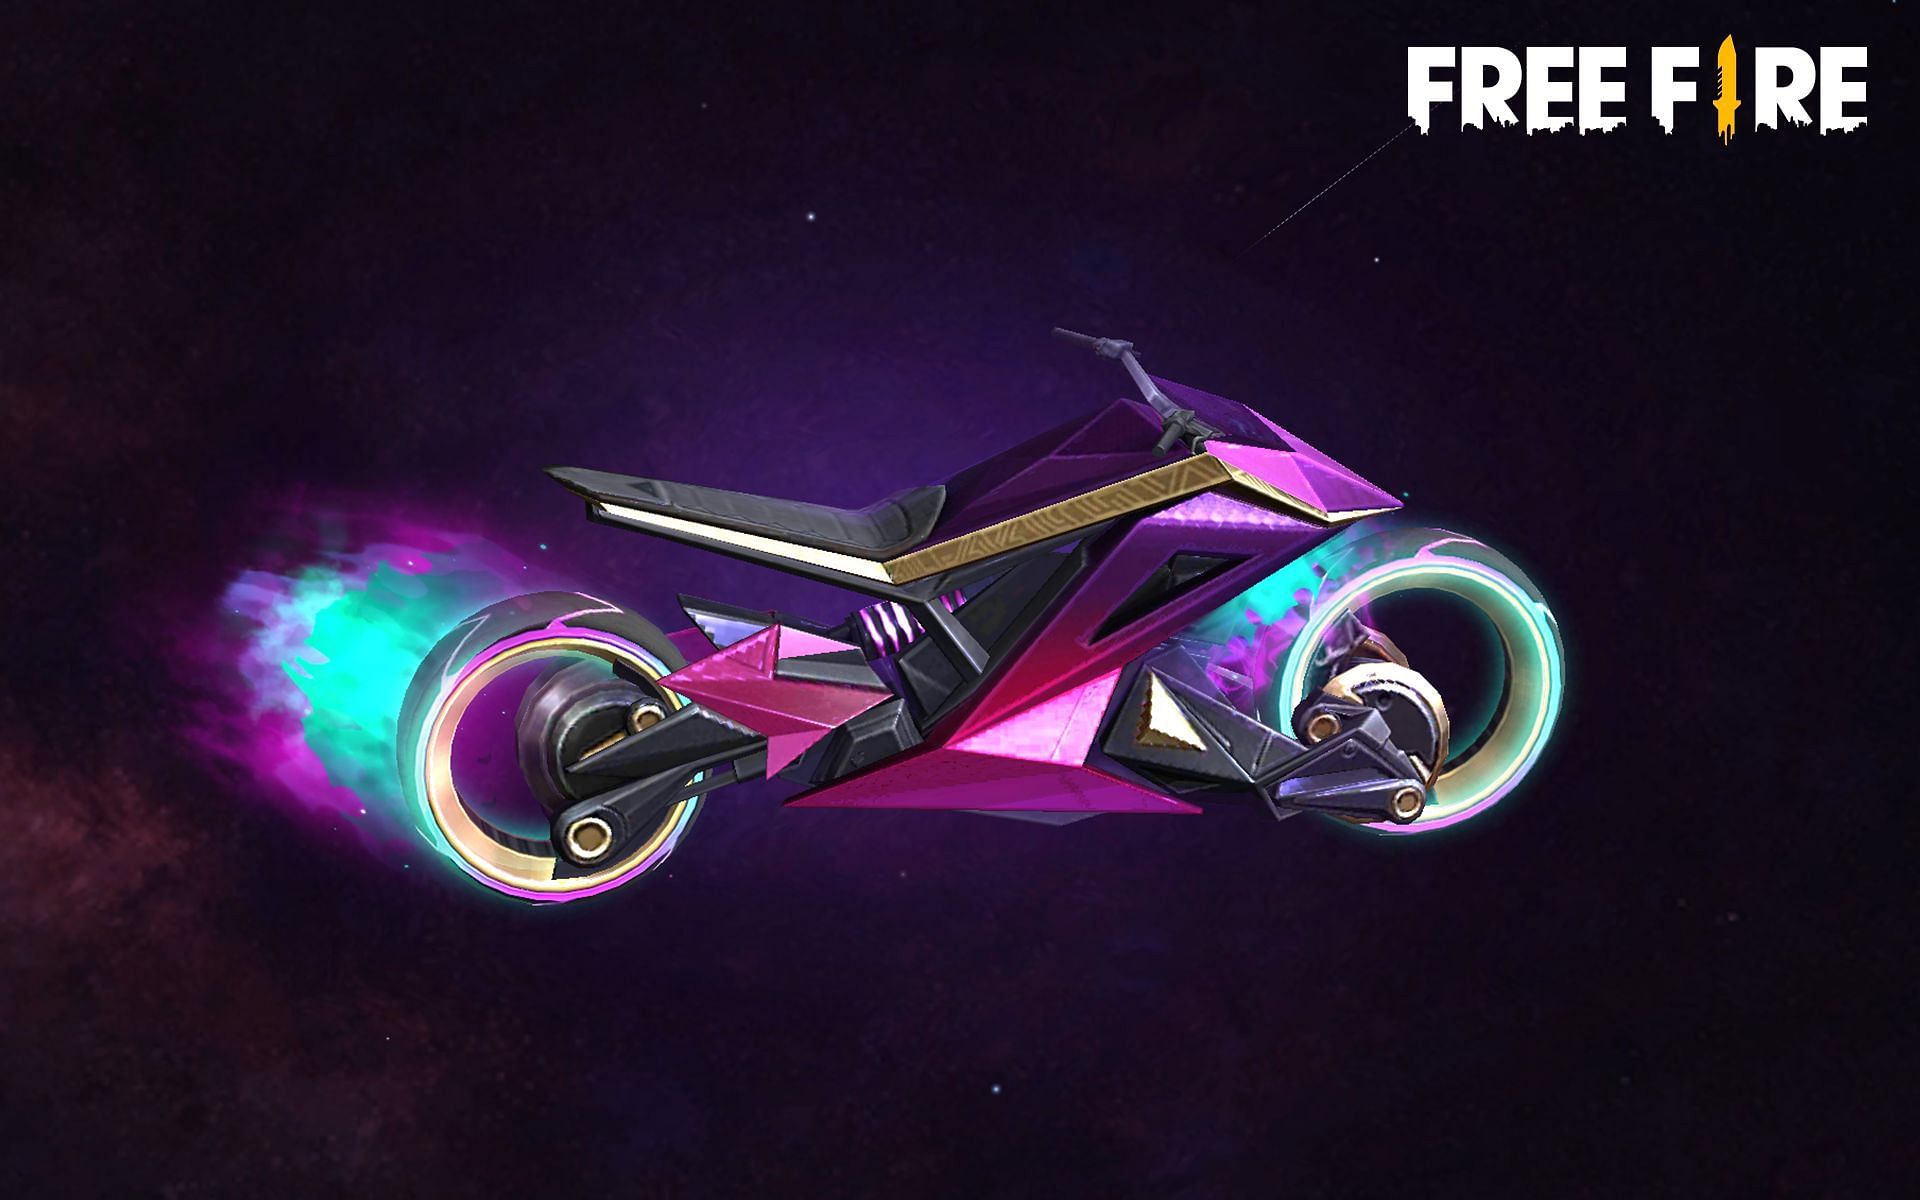 جلد الدراجة الأسطوري الجديد في Free Fire (الصورة من Garena)